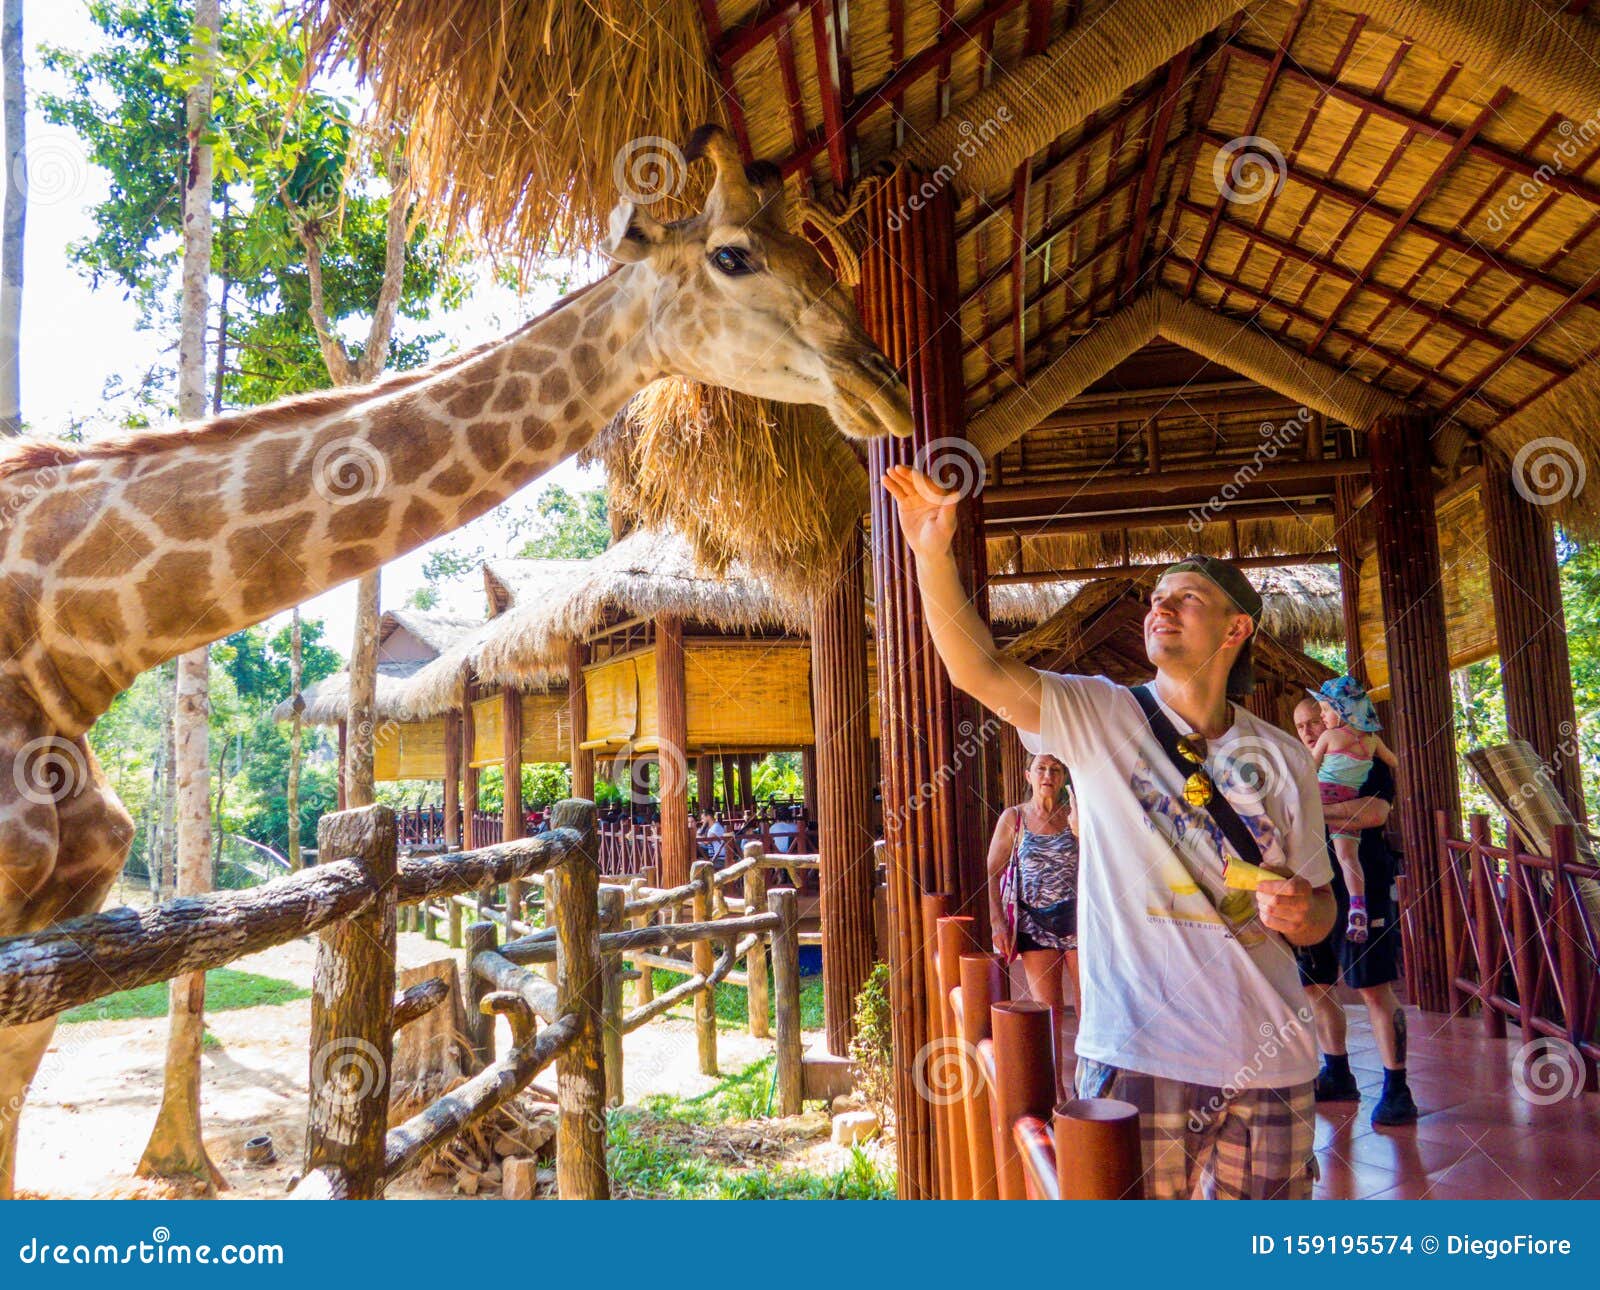 Safari Phú Quốc Khám phá Khu vườn thú Vinpearl đầy độc đáo